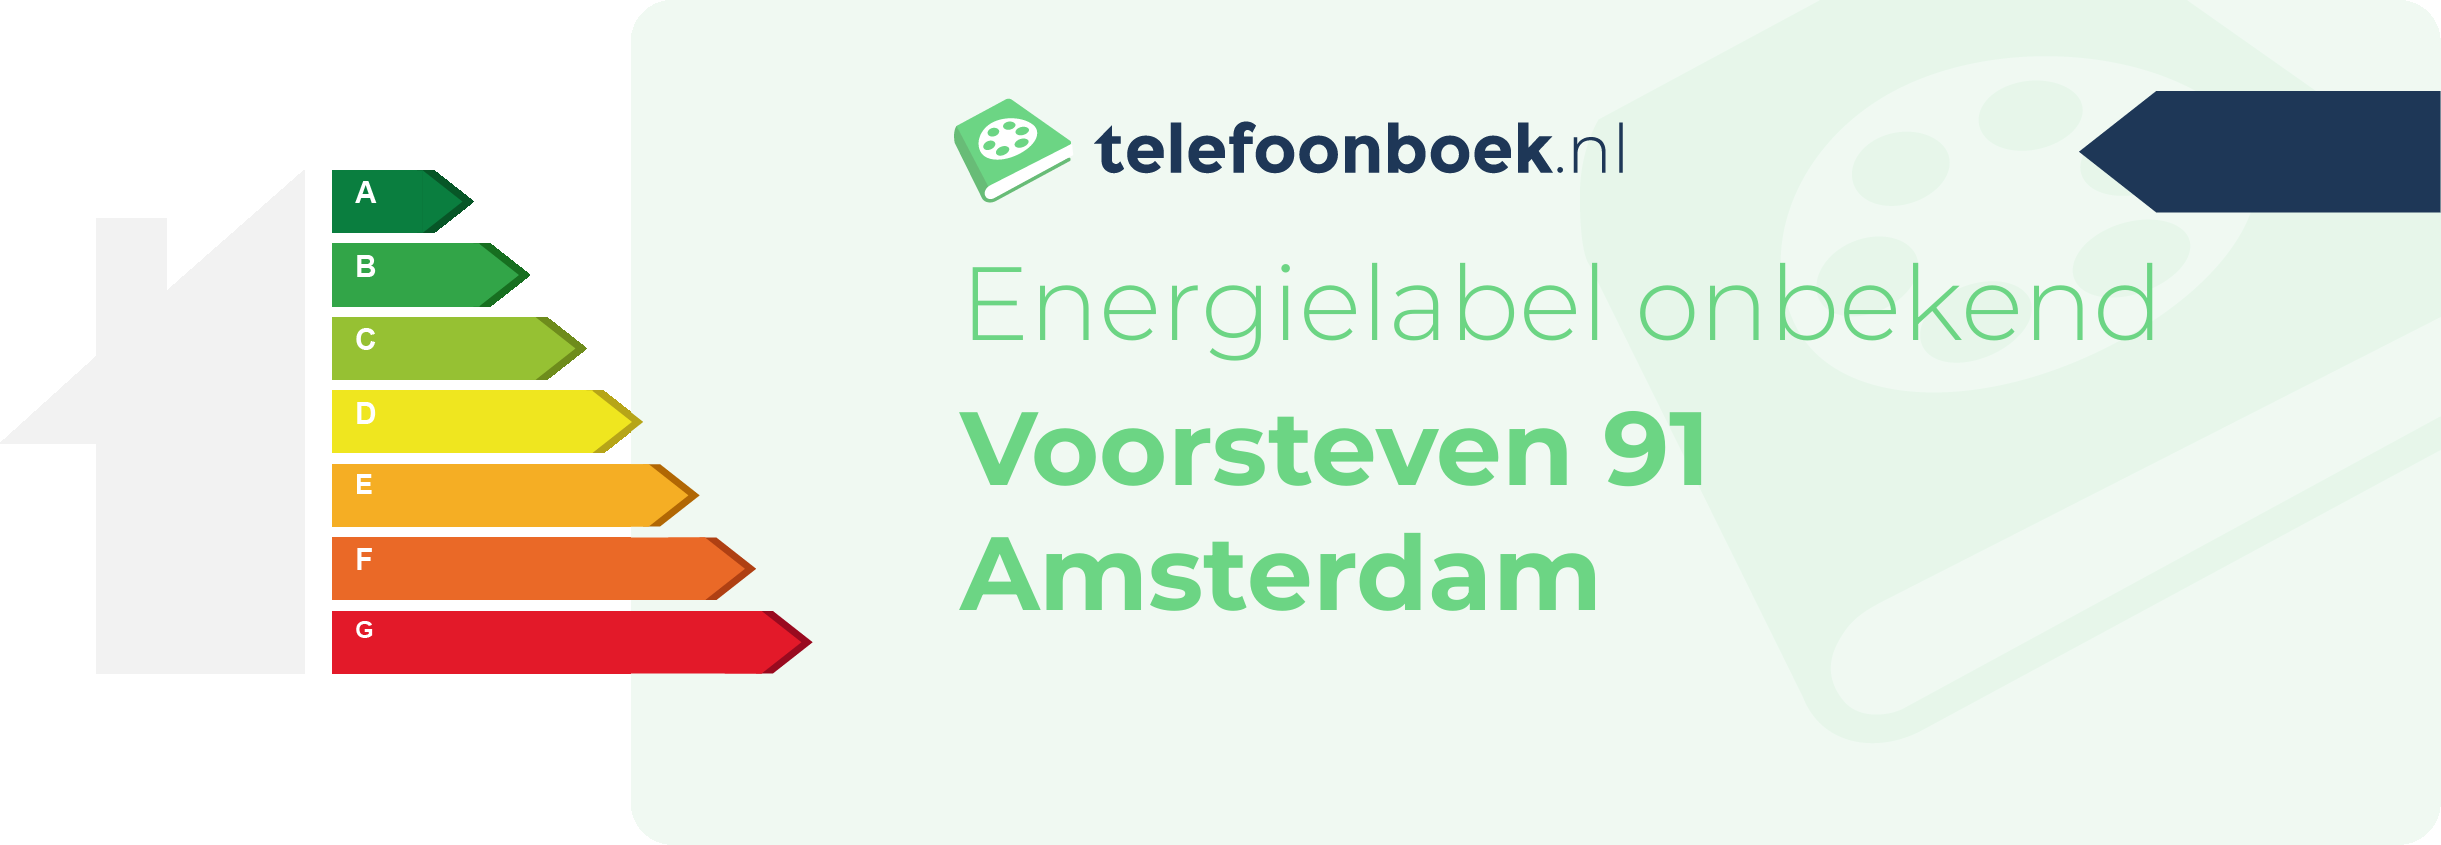 Energielabel Voorsteven 91 Amsterdam